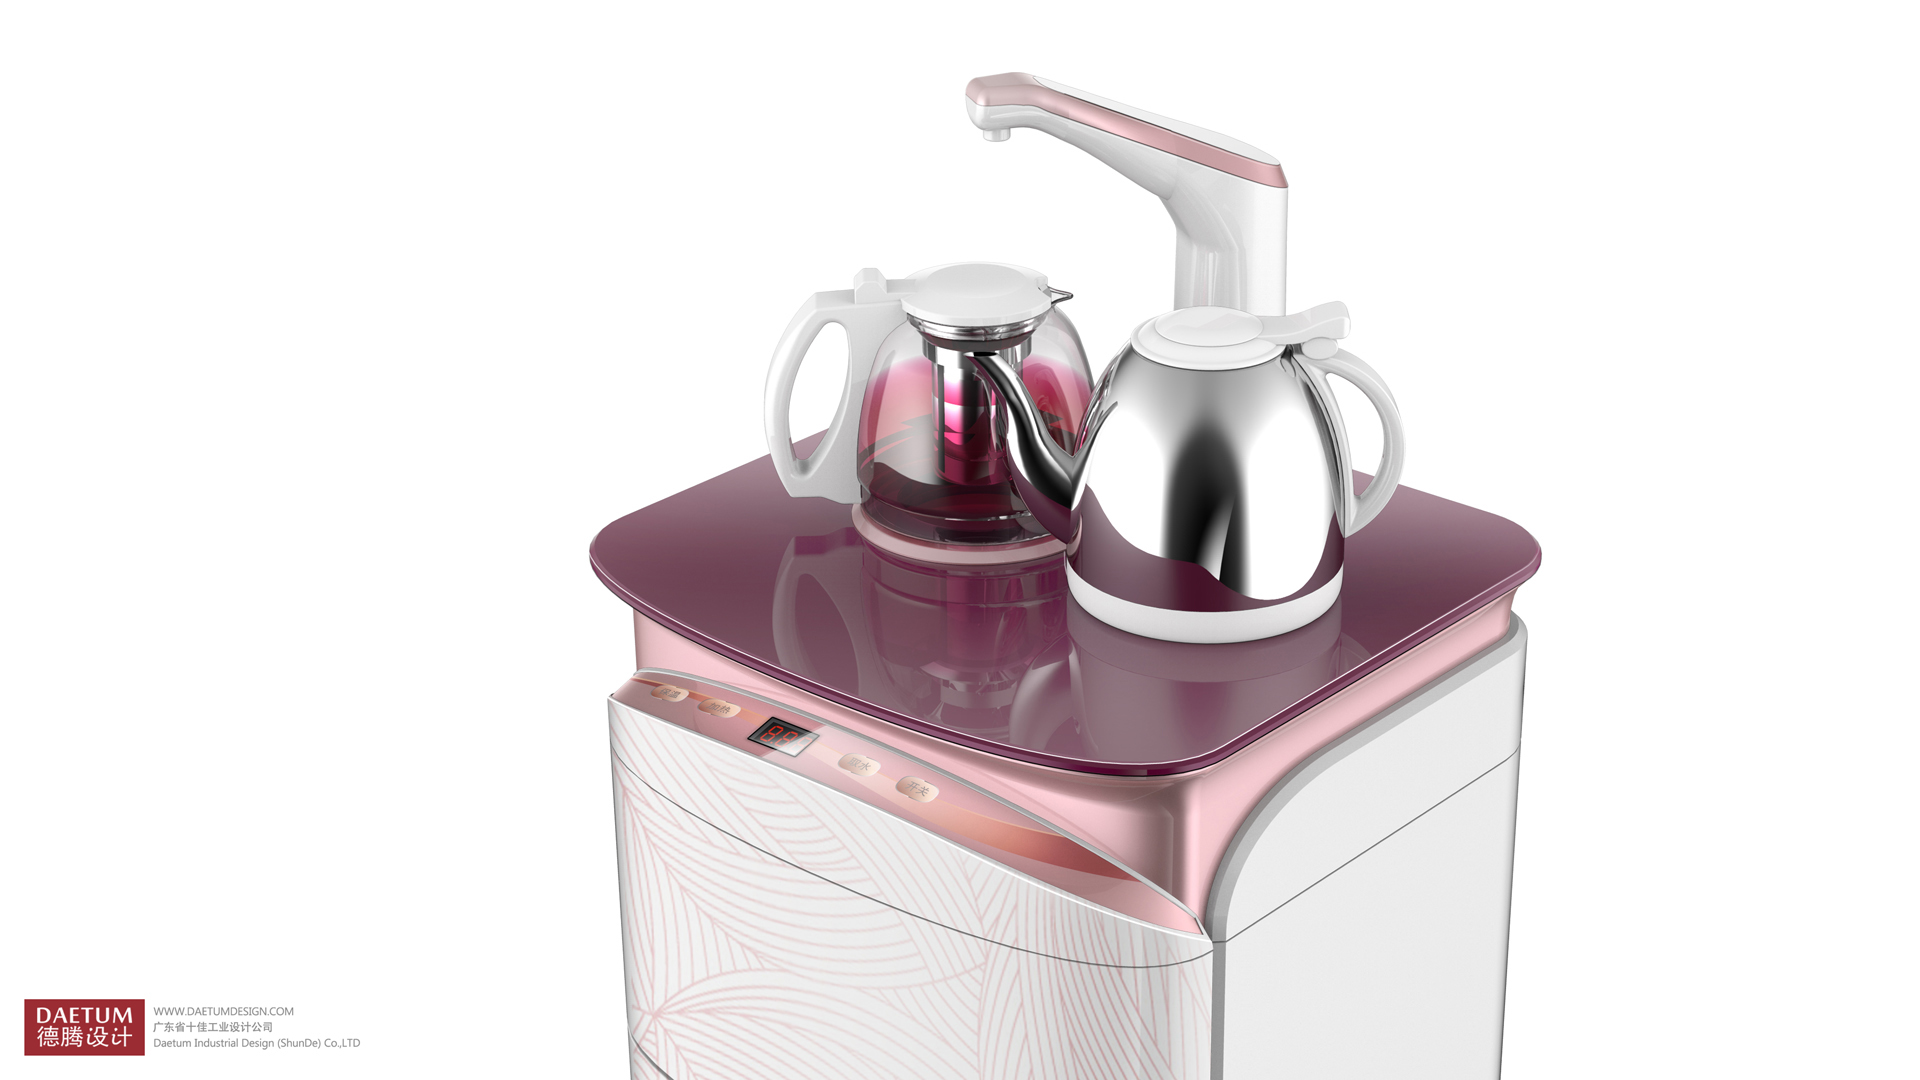 茶吧饮水机设计,茶吧饮水机外观设计,茶吧饮水机产品设计